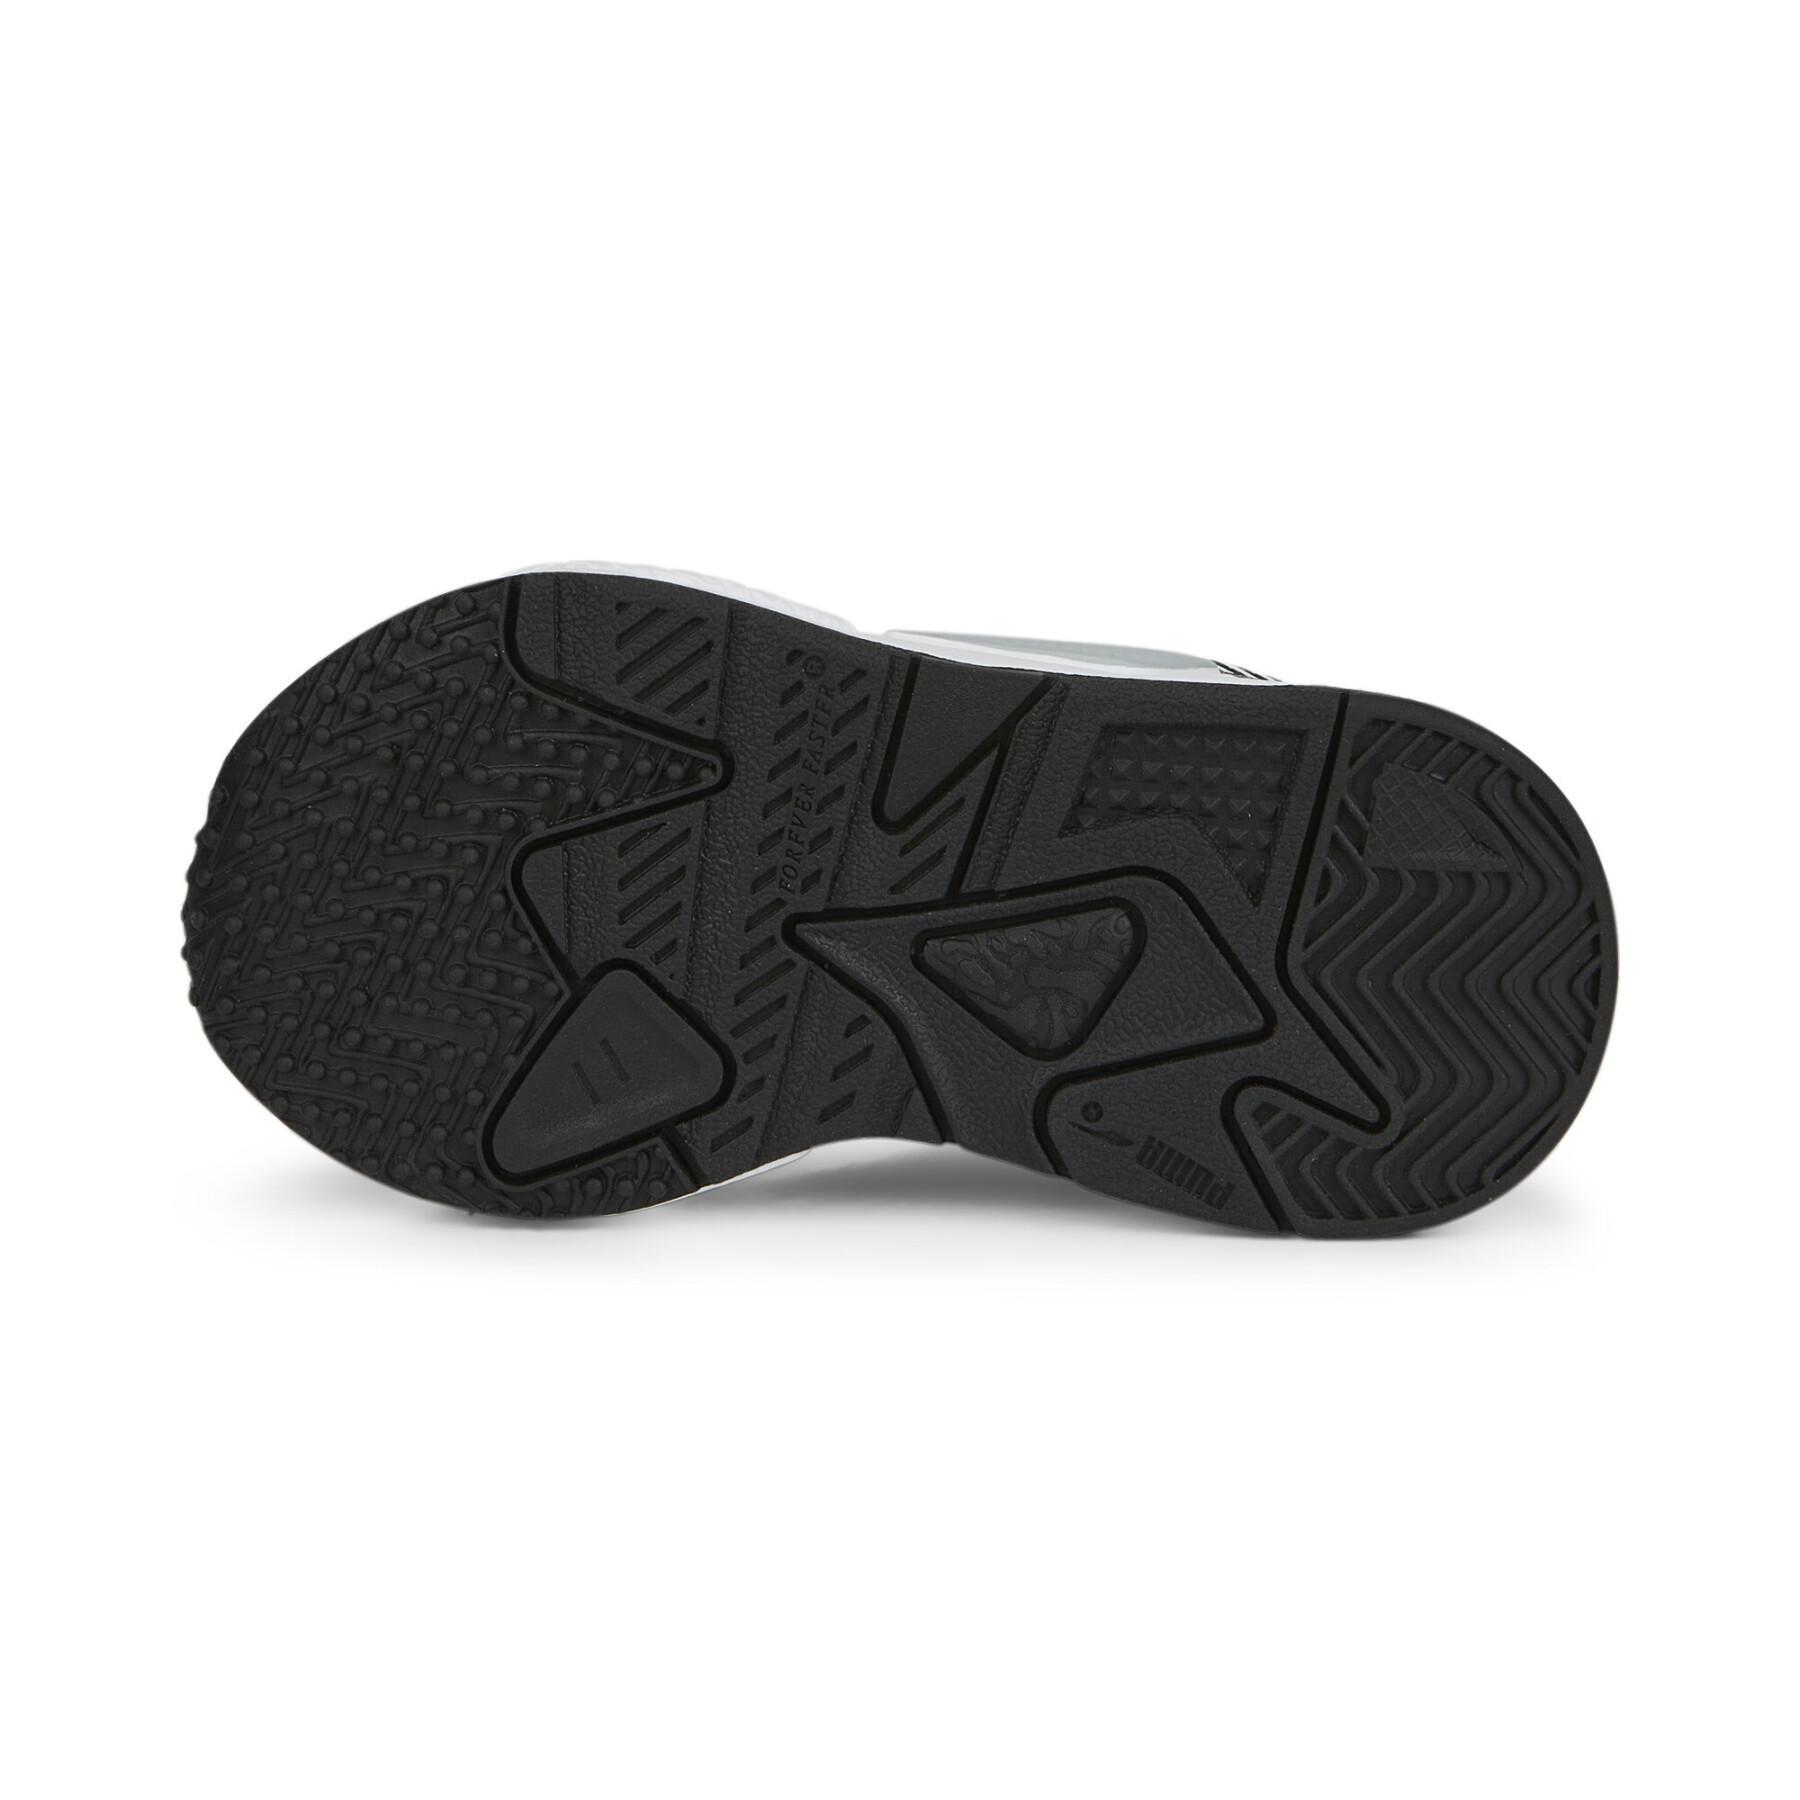 Zapatillas para bebés Puma RS-Z